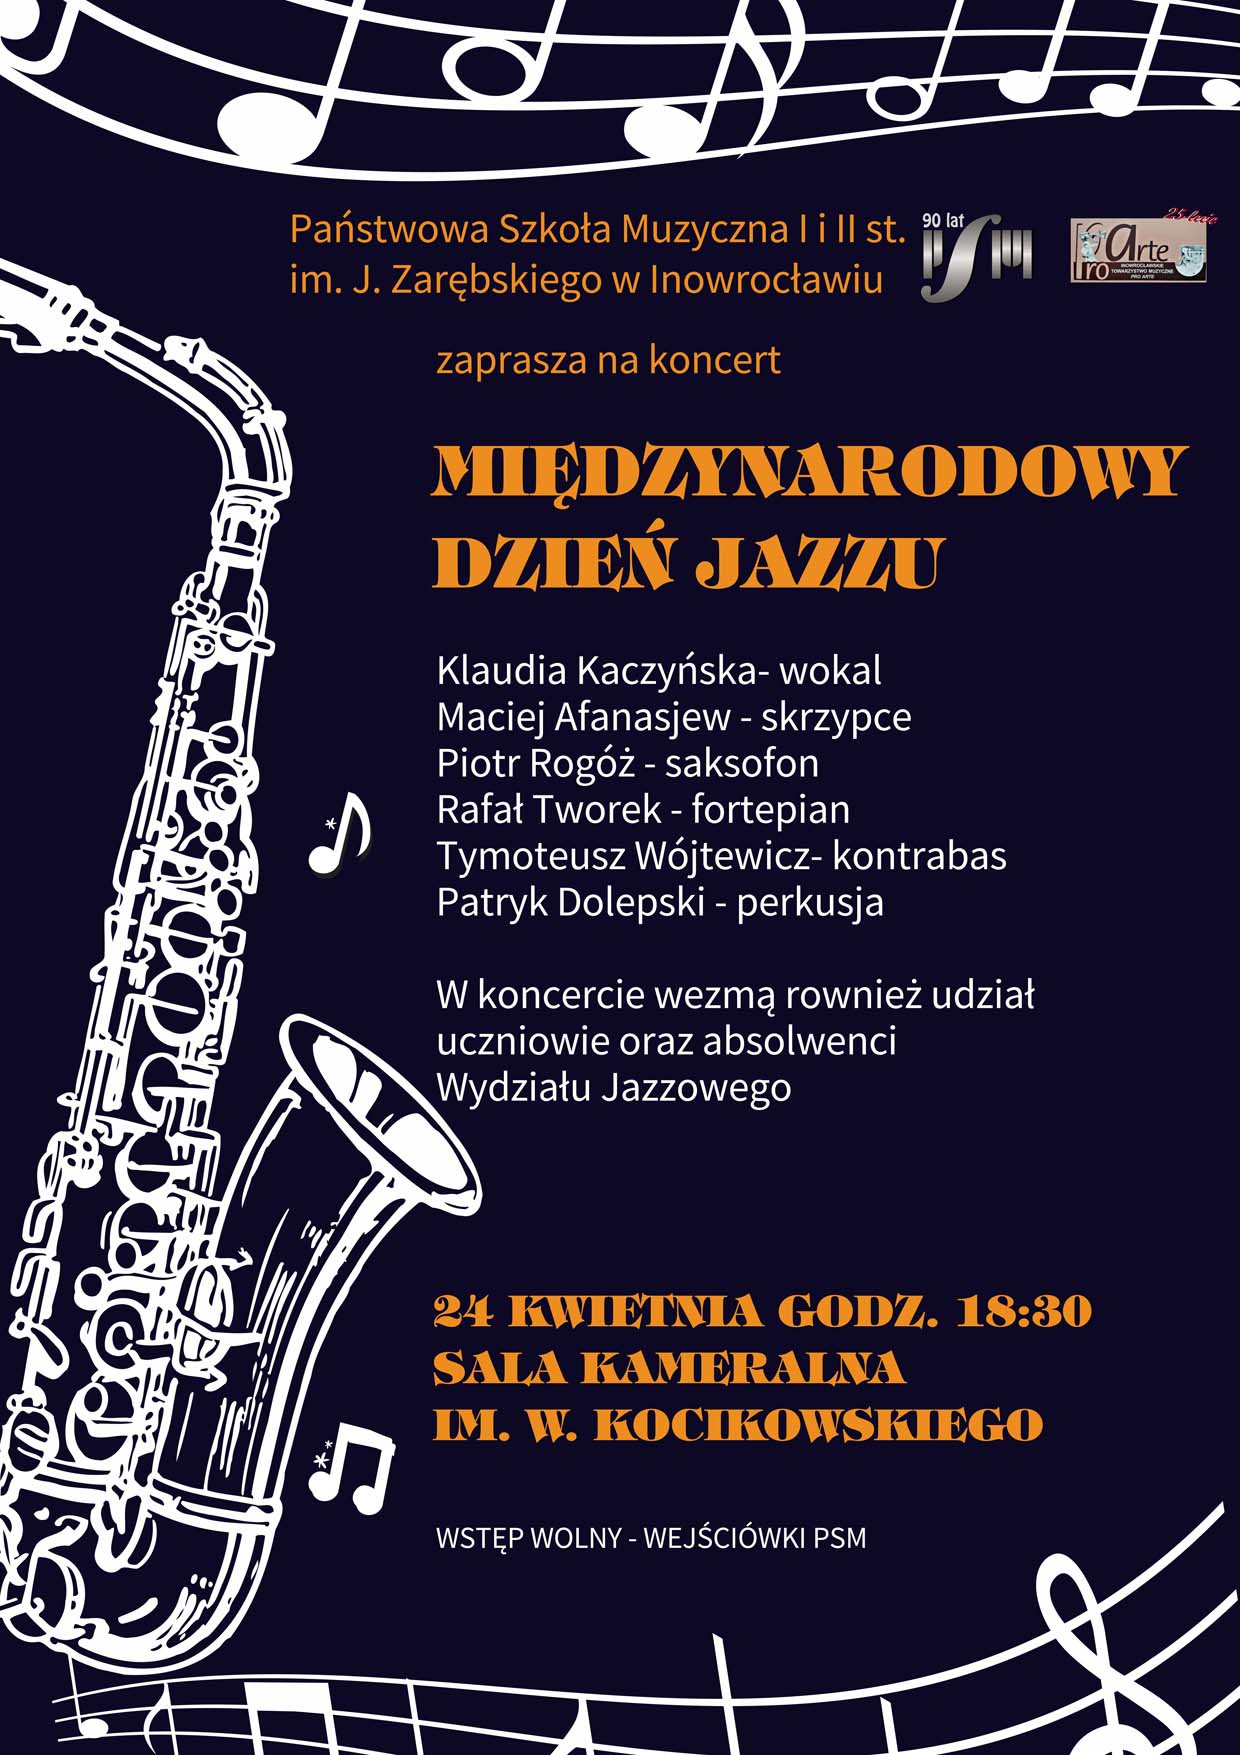 Plakat promujący wydarzenie Międzynarodowy dzień jazzu